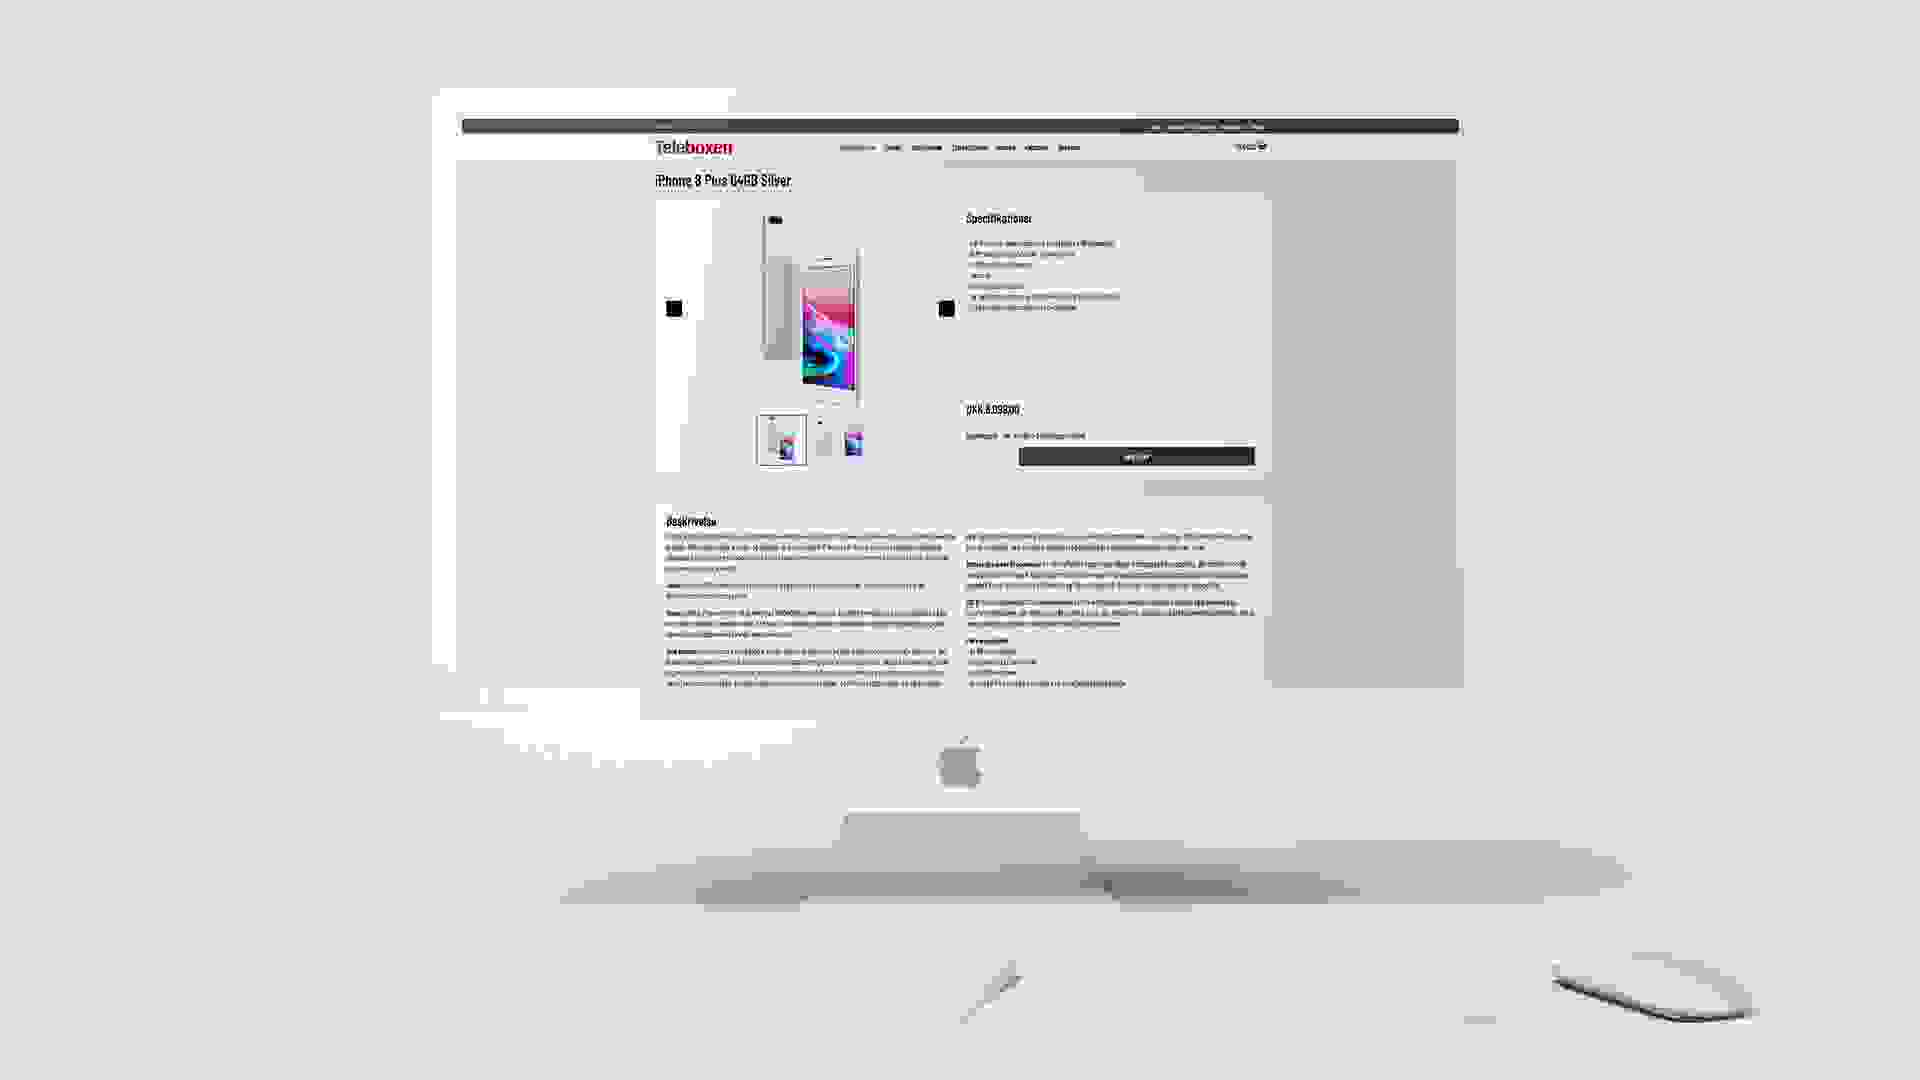 Teleboxen iMac